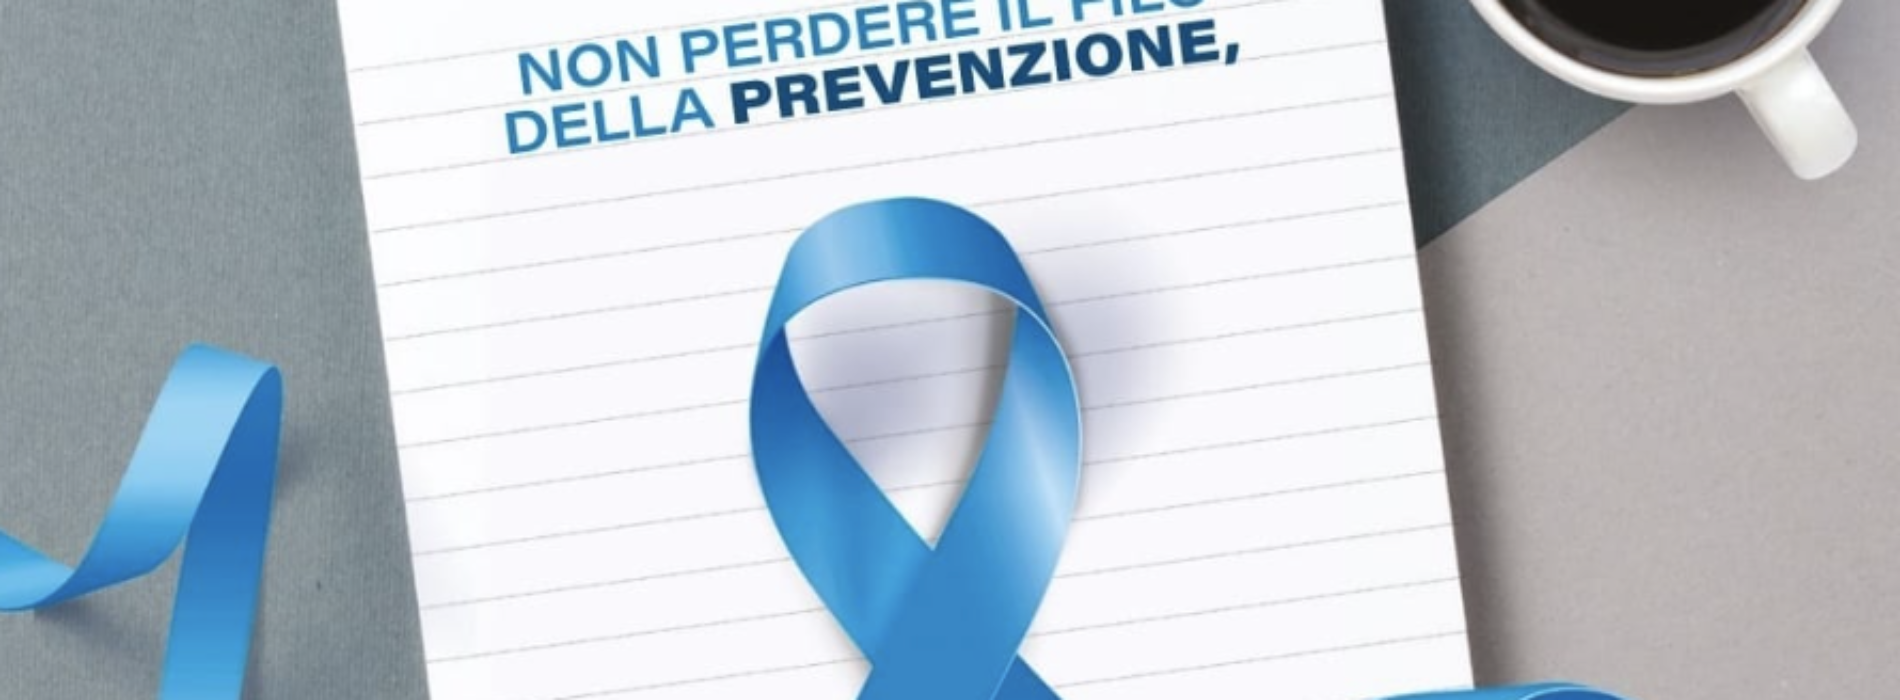 Percorso Azzurro. La campagna prevenzione Lilt per gli uomini